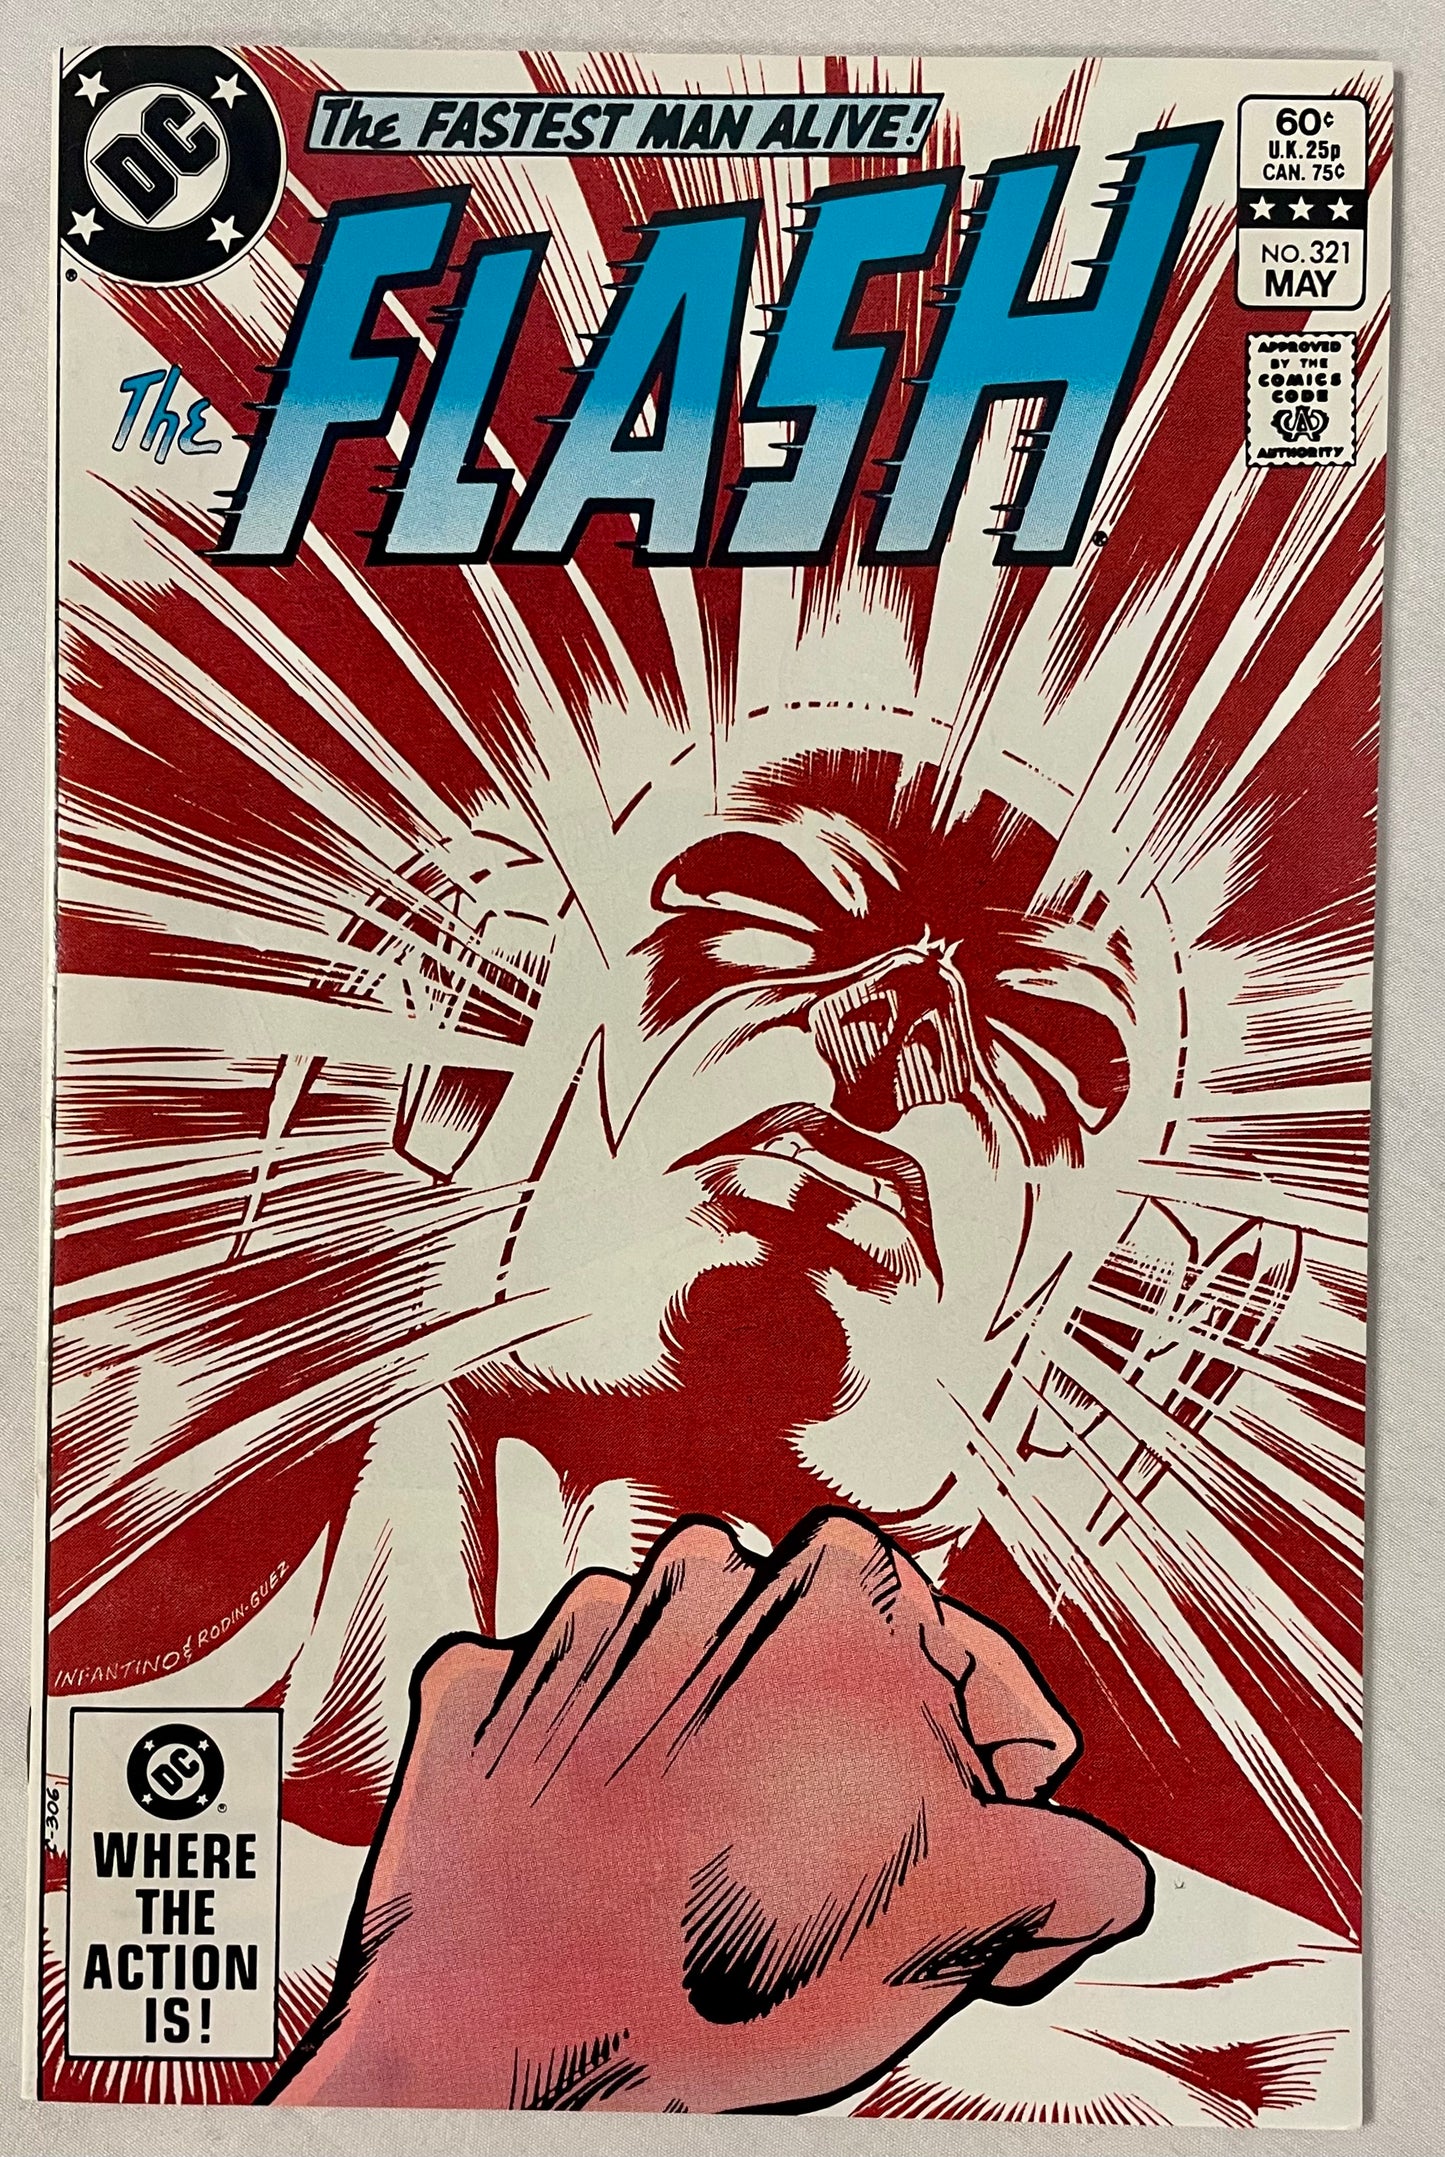 DC Comics The Flash No. 321